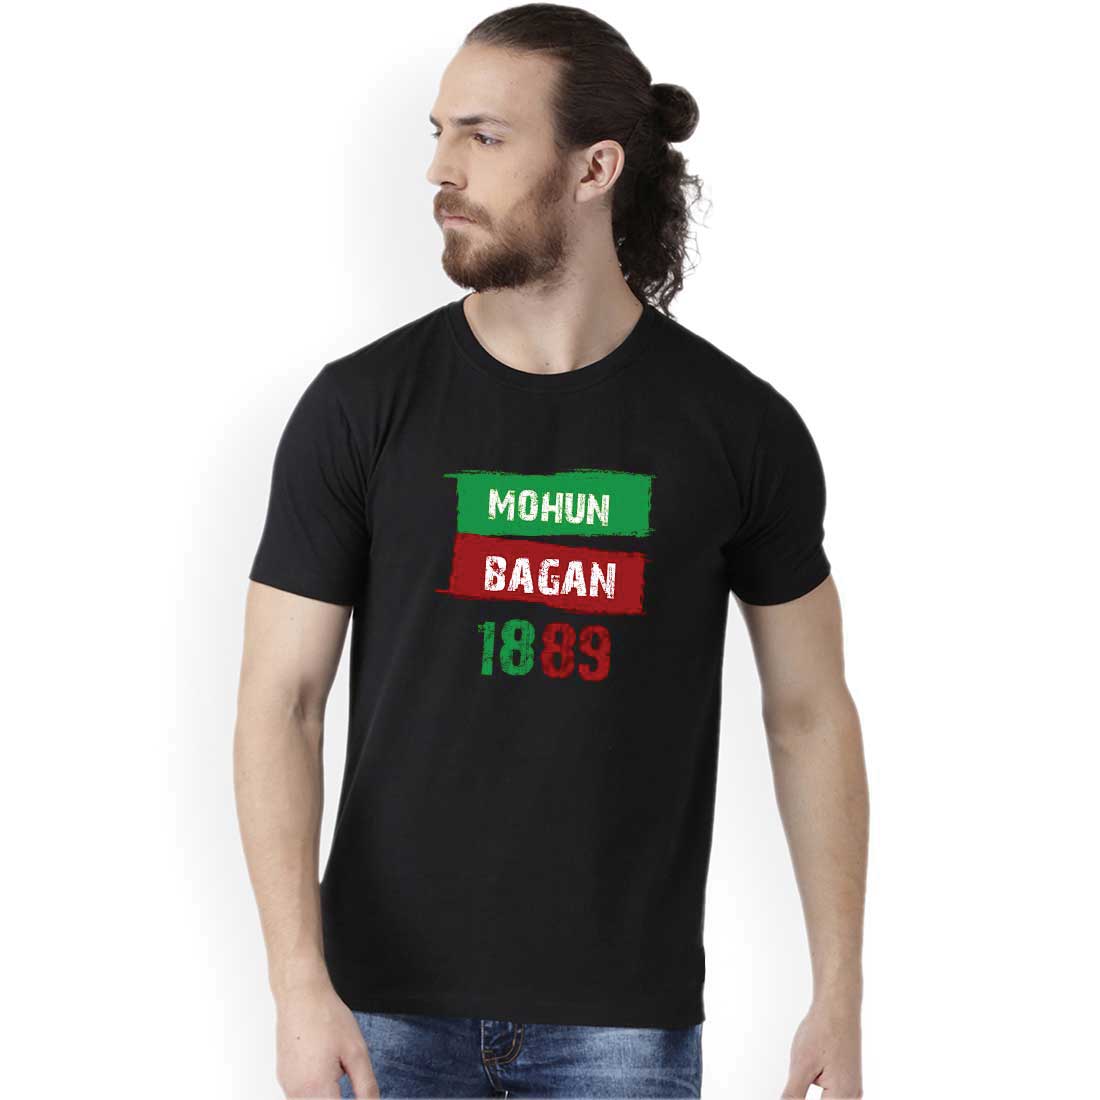 Mohun Bagan 1889 Black Men T-Shirt